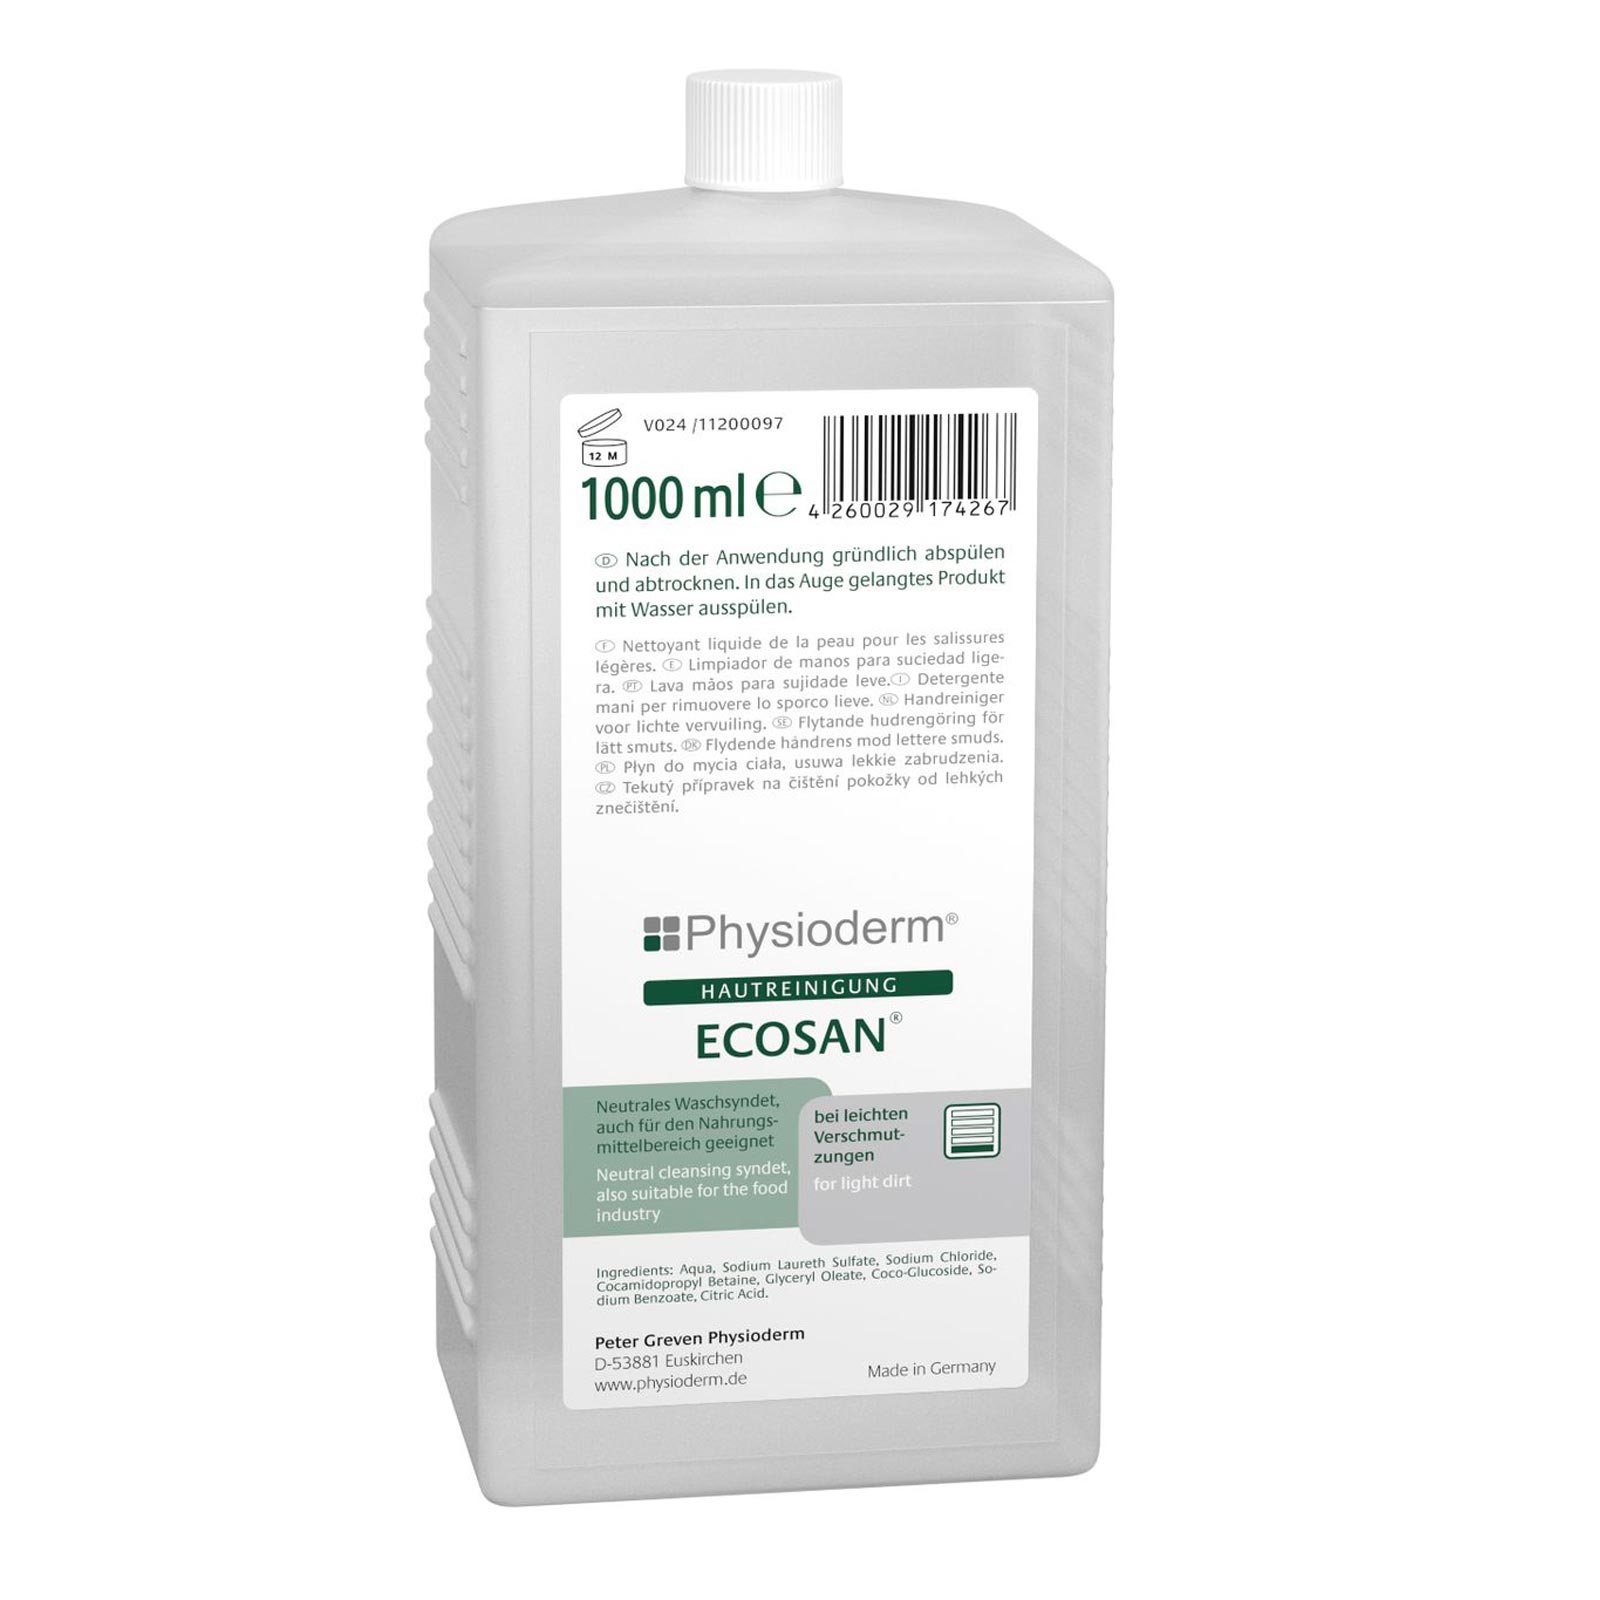 PHYSIODERM Handreiniger Ecosan, Handwaschlotion, für leichte Verunreinigungen Inhalt:1 Liter Hartflasche von Physioderm